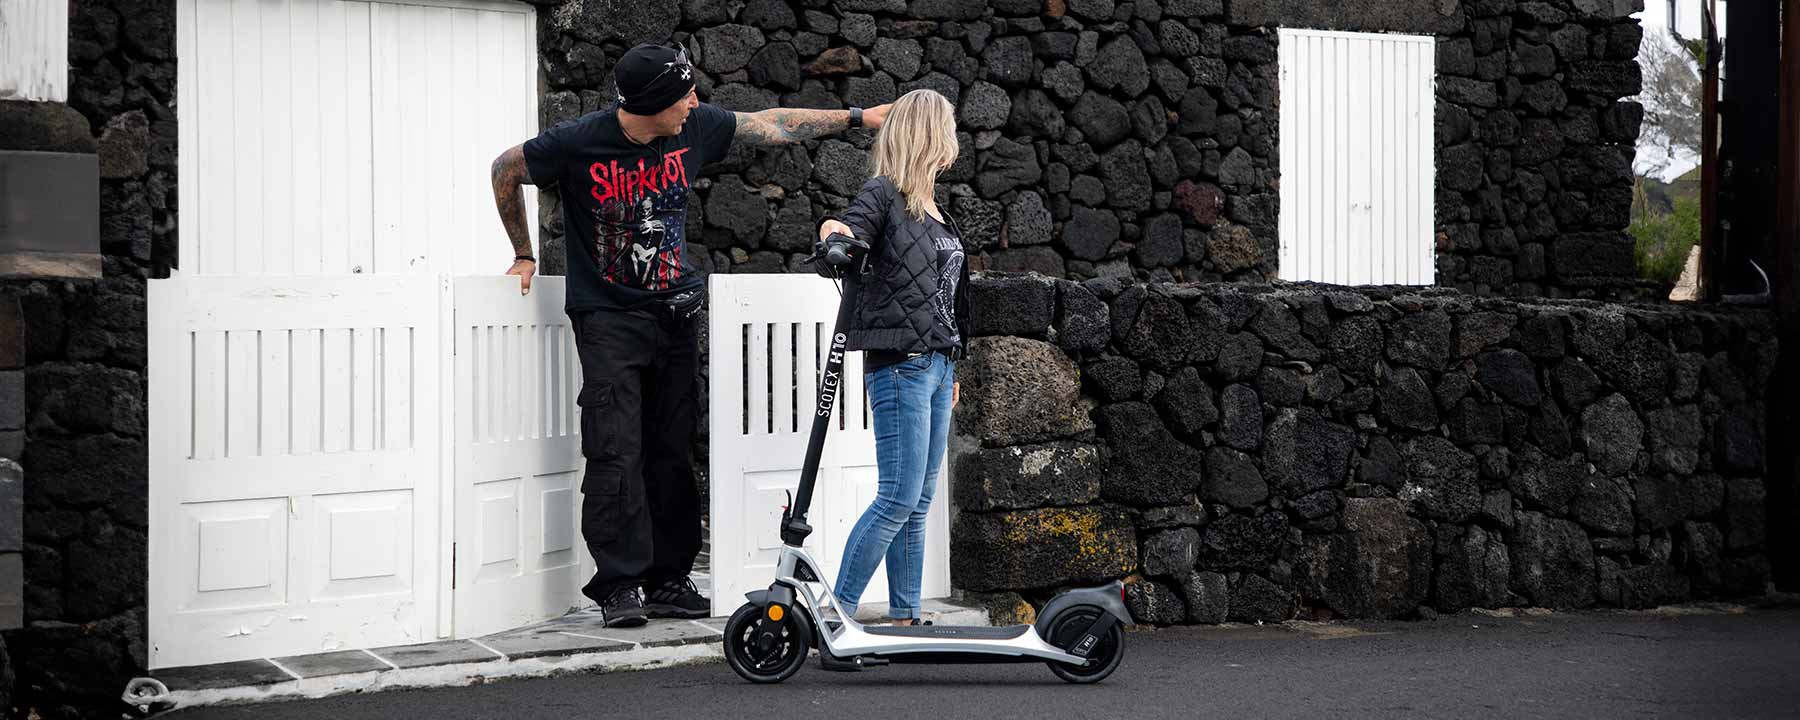 Vorstellung des H10 eKFV E-Scooters: Leistung und Komfort vereint